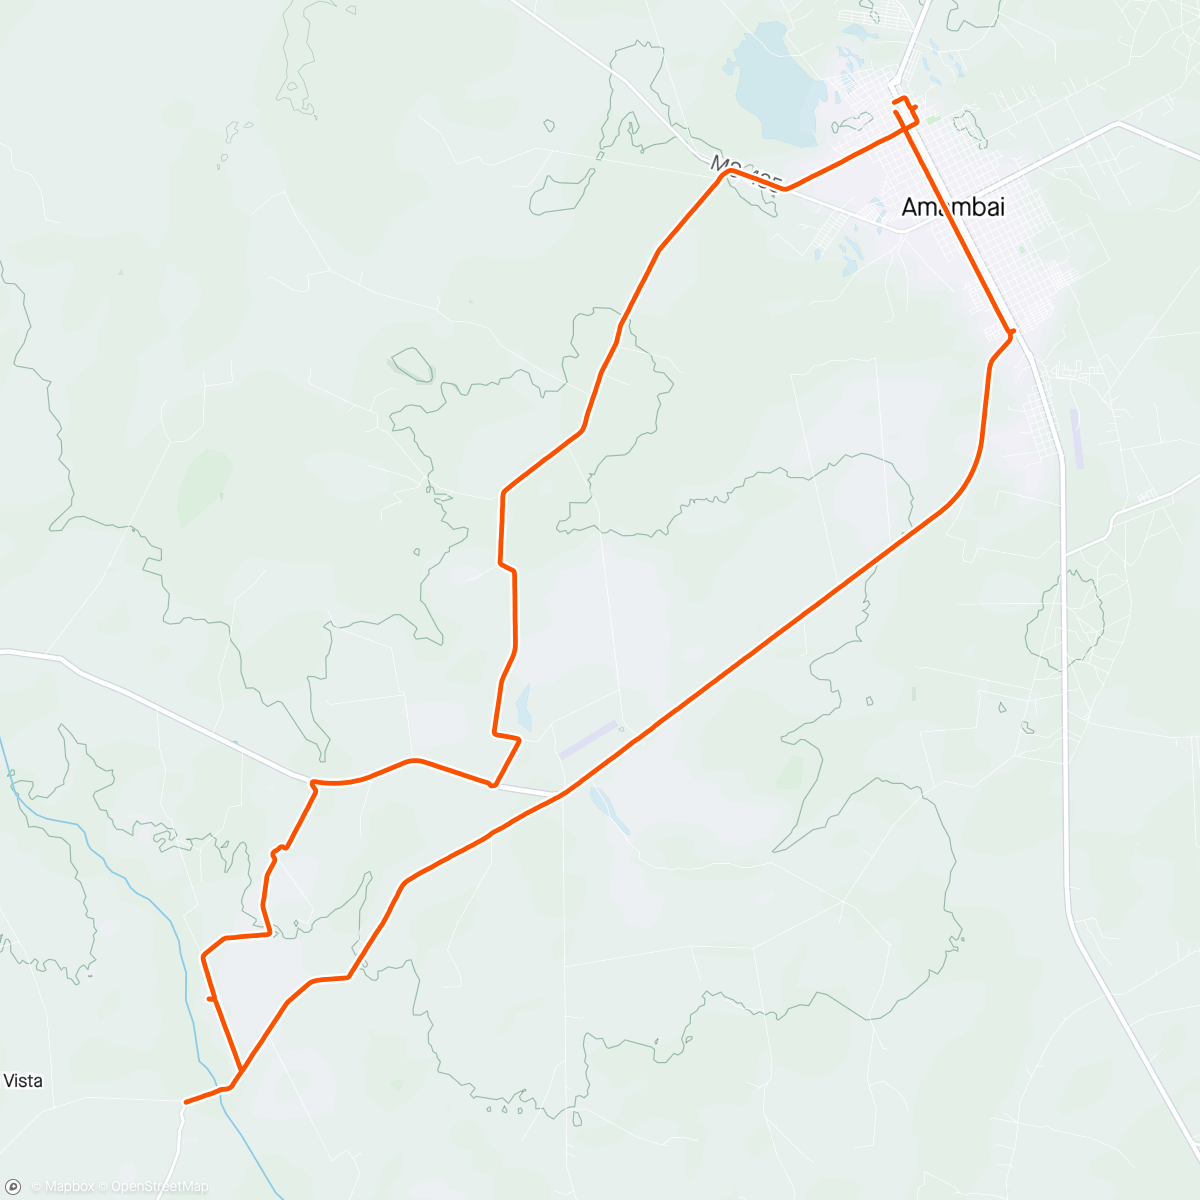 Map of the activity, Pedal de domingo